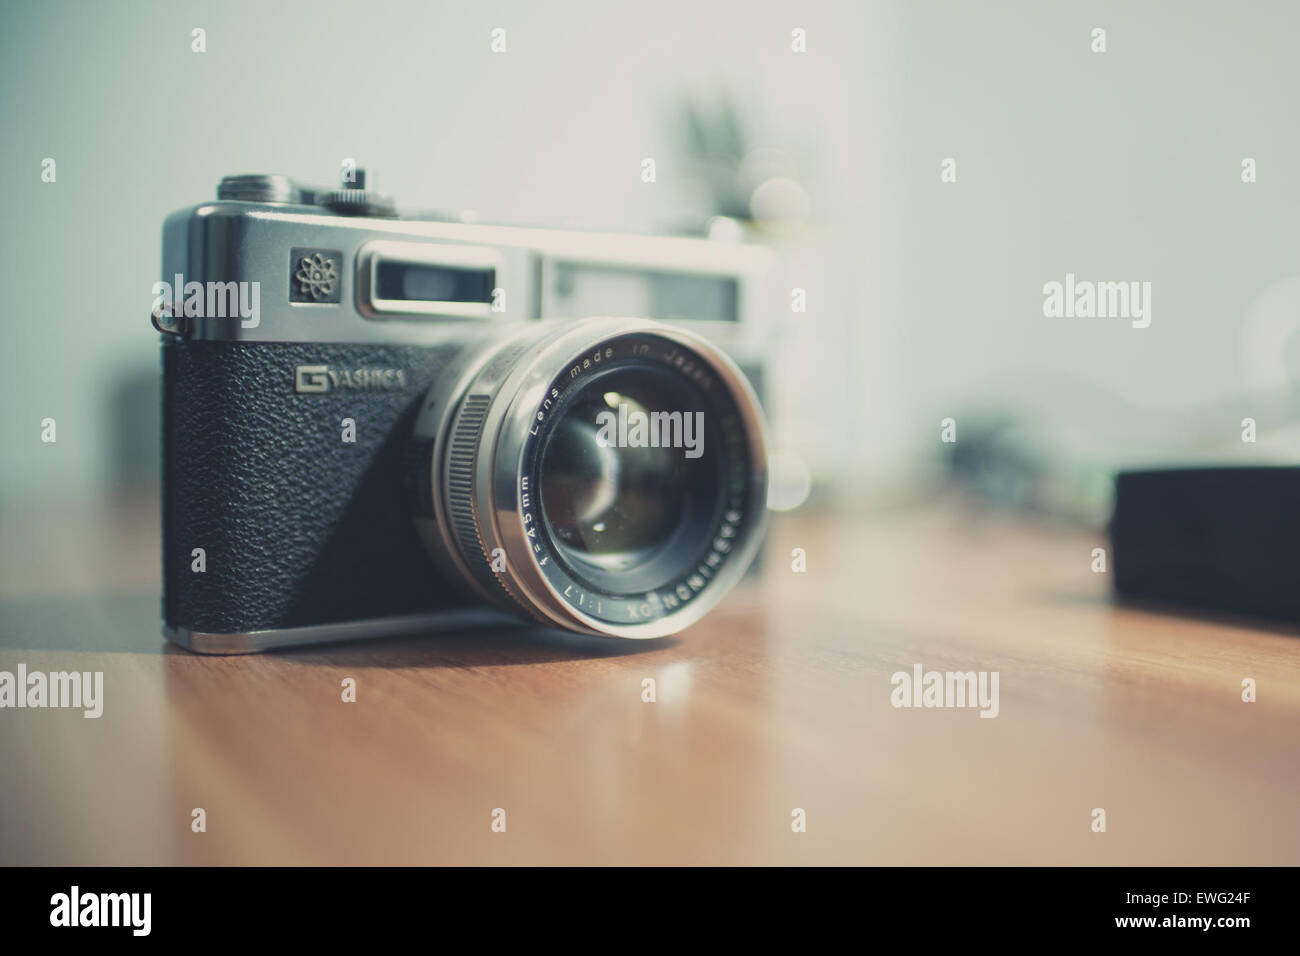 Yashica fotocamera con obiettivo Desktop Indoor attrezzature fotografiche piano portapaziente Yashica lente della fotocamera fotografia Foto Stock